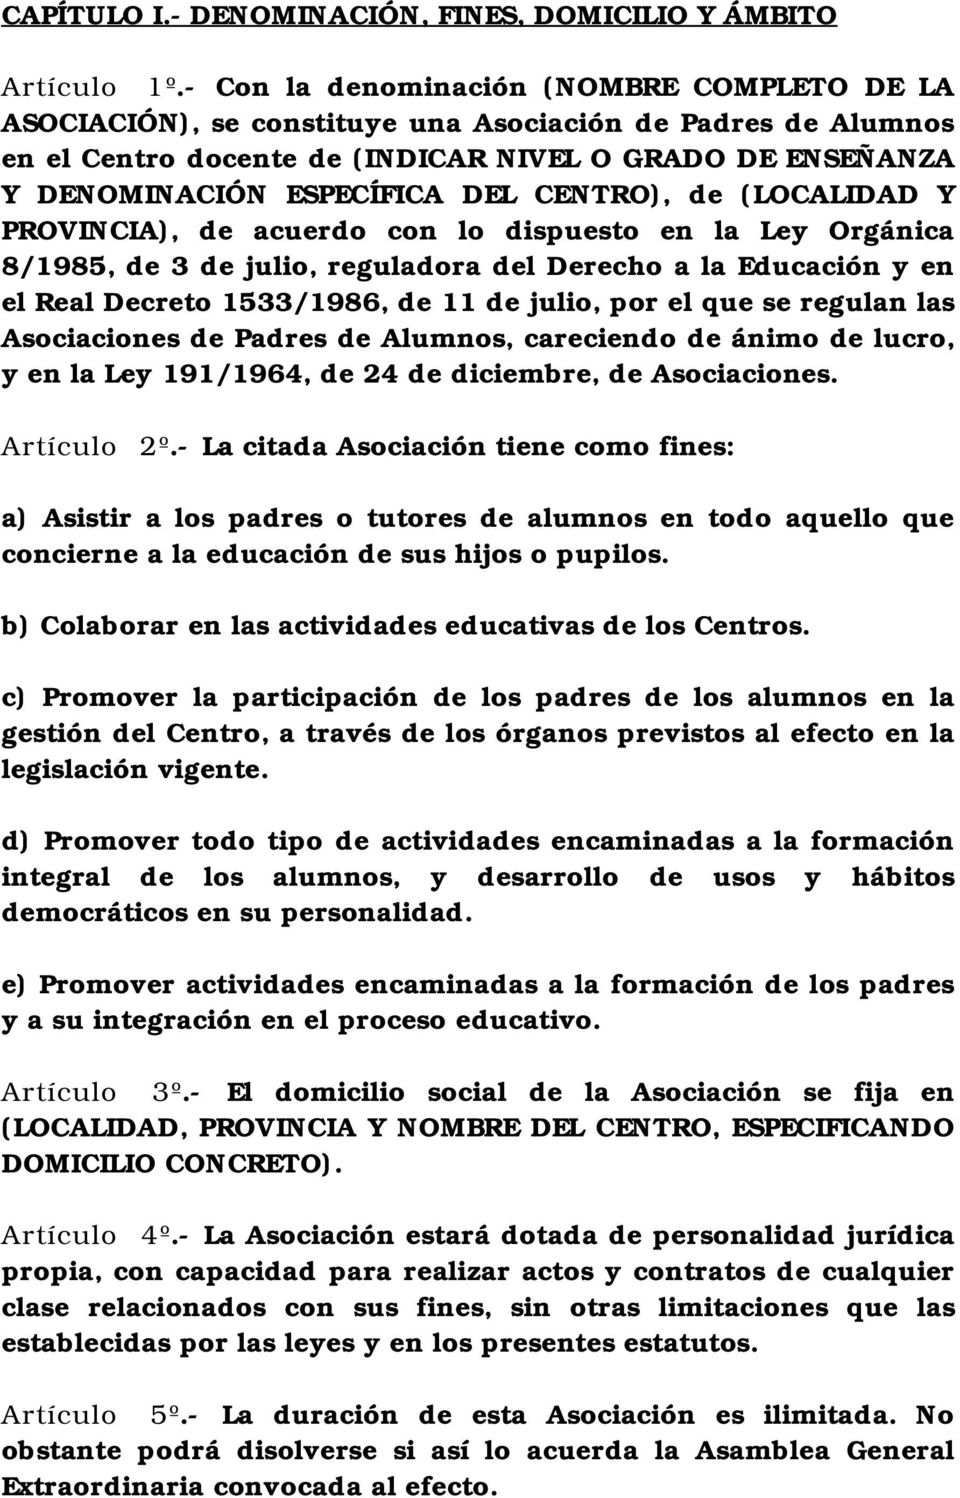 CENTRO), de (LOCALIDAD Y PROVINCIA), de acuerdo con lo dispuesto en la Ley Orgánica 8/1985, de 3 de julio, reguladora del Derecho a la Educación y en el Real Decreto 1533/1986, de 11 de julio, por el